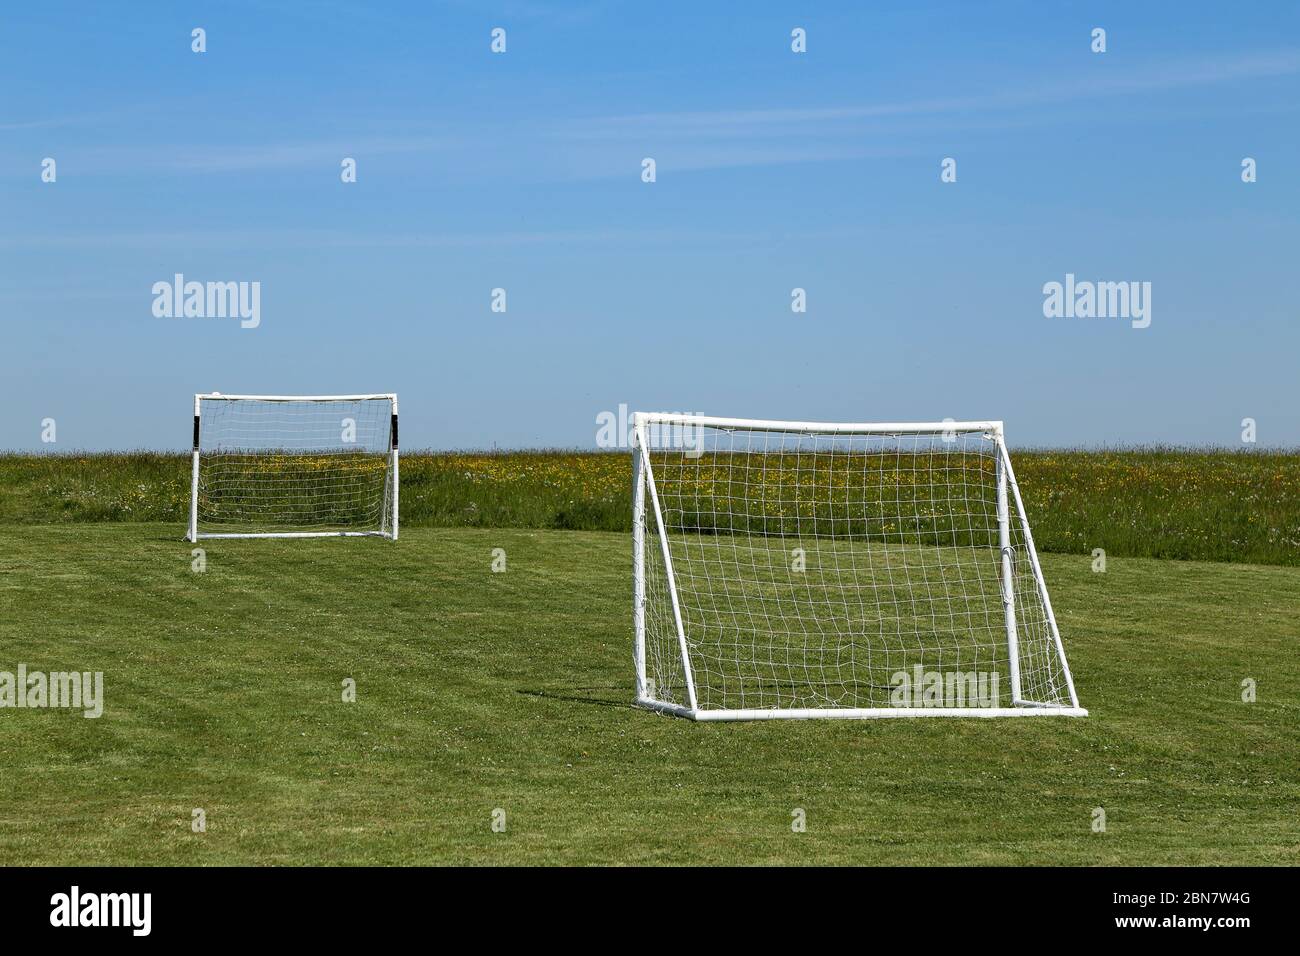 Fußball-Tor stehen auf einem grünen Rasen Stockfoto